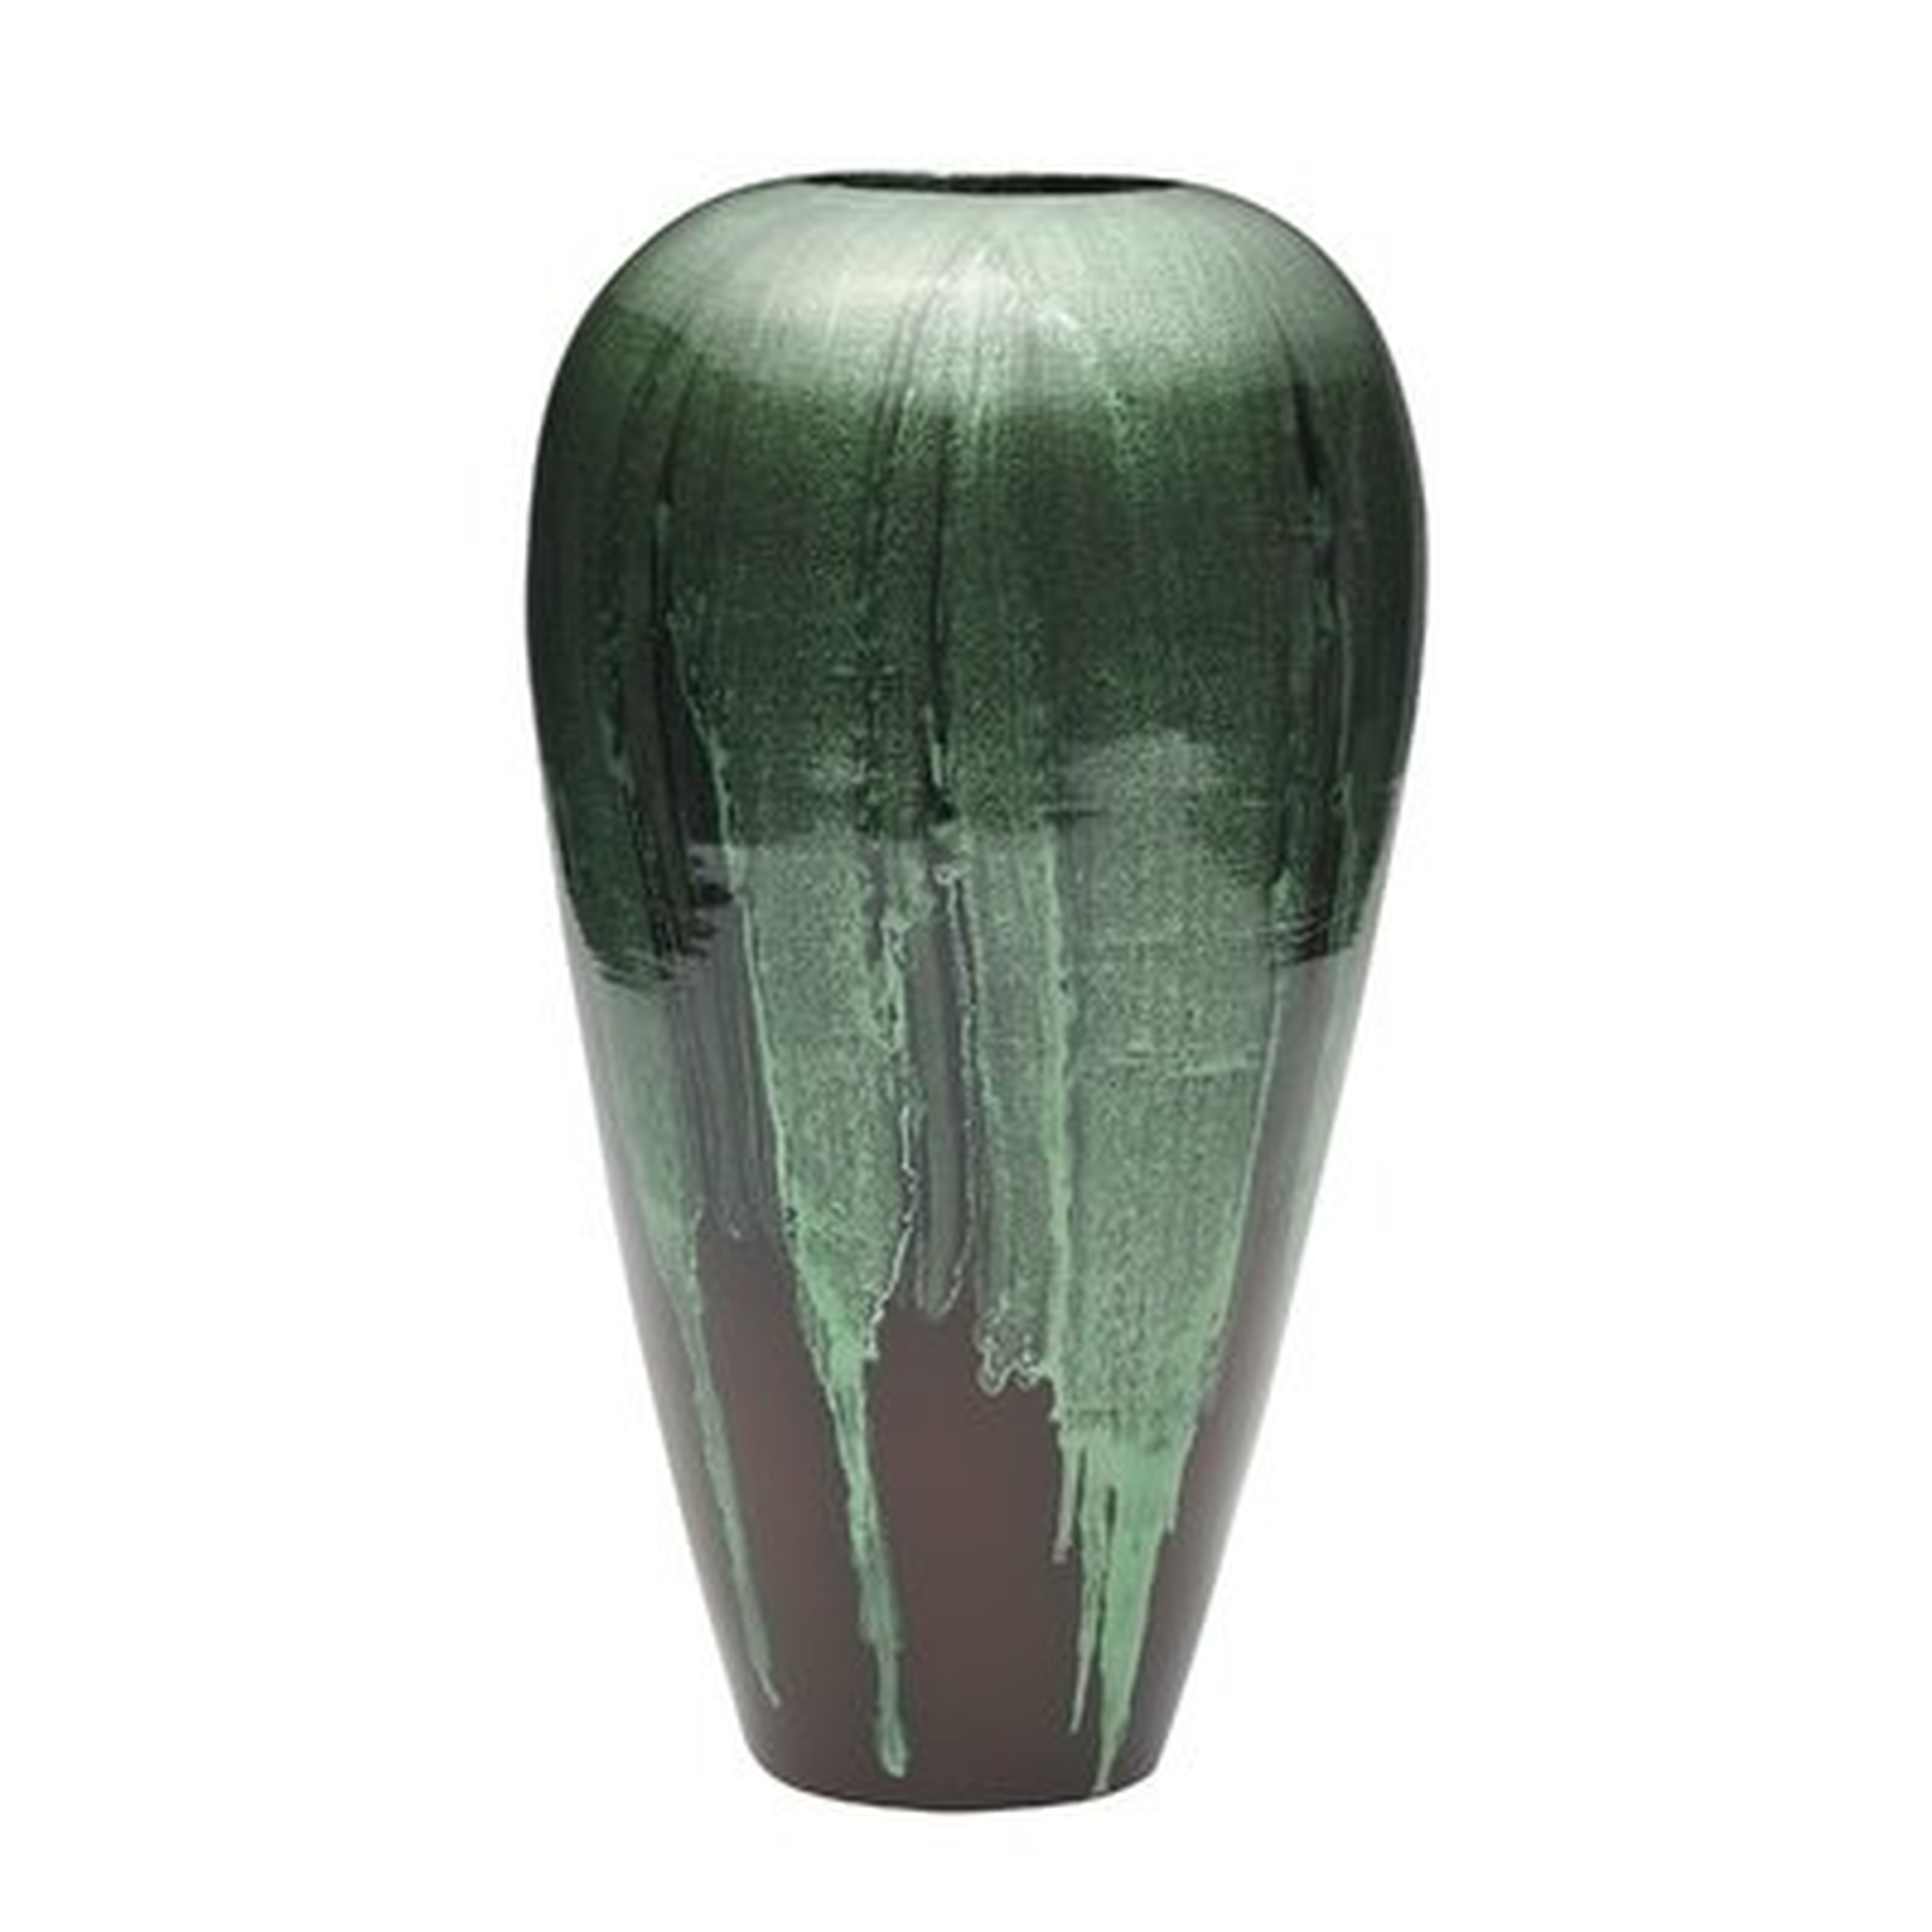 Cane Bamboo Tear Drop Table Vase - Wayfair